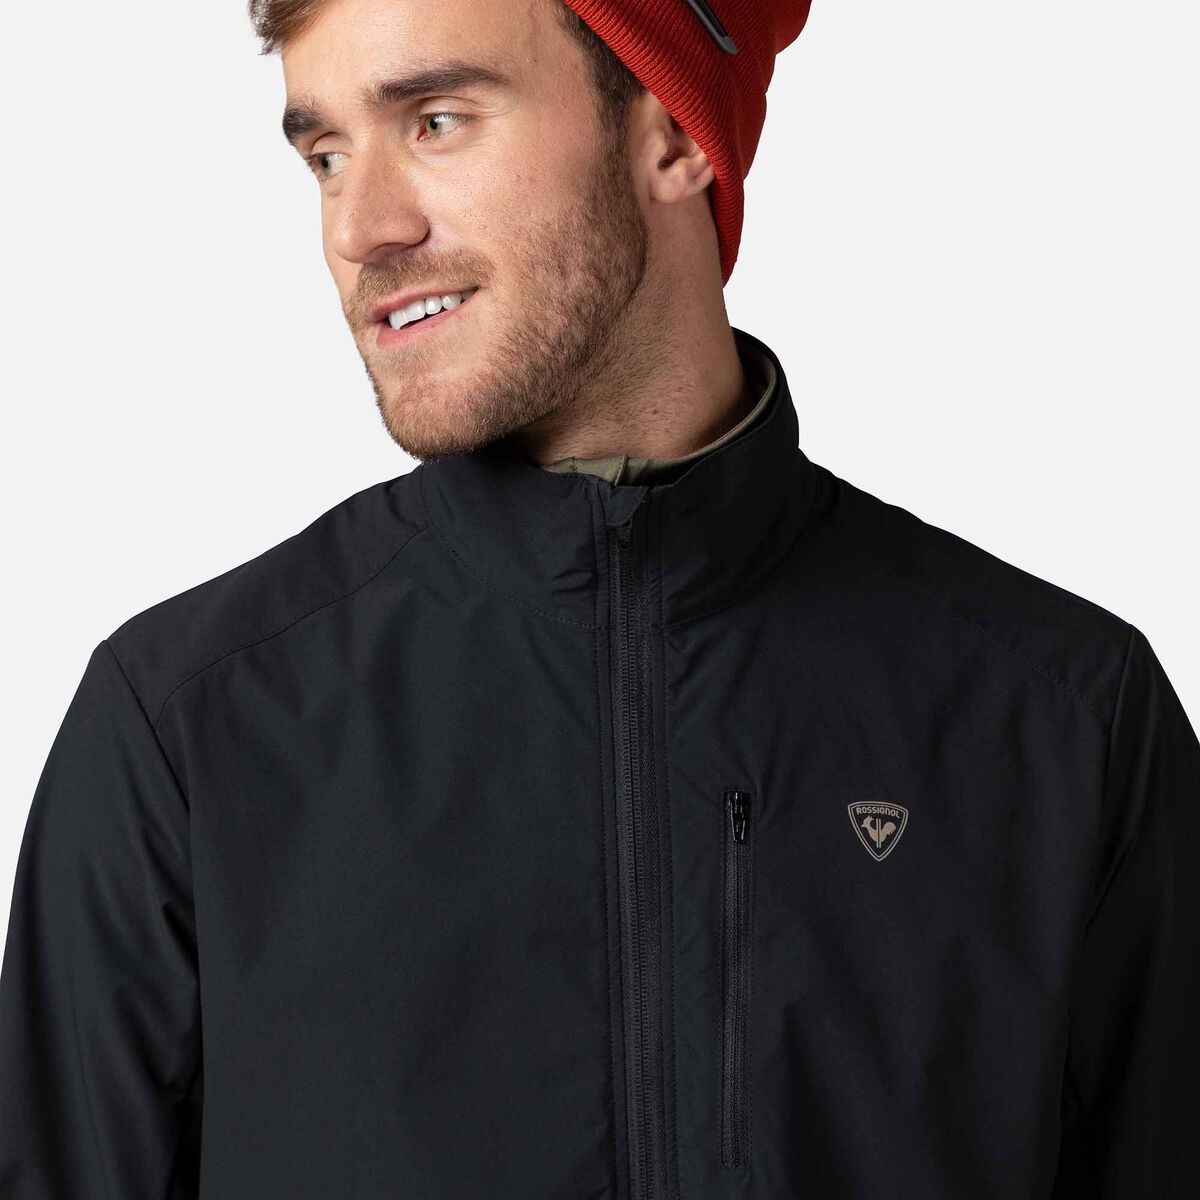 Men's Active Versatile XC Ski Jacket